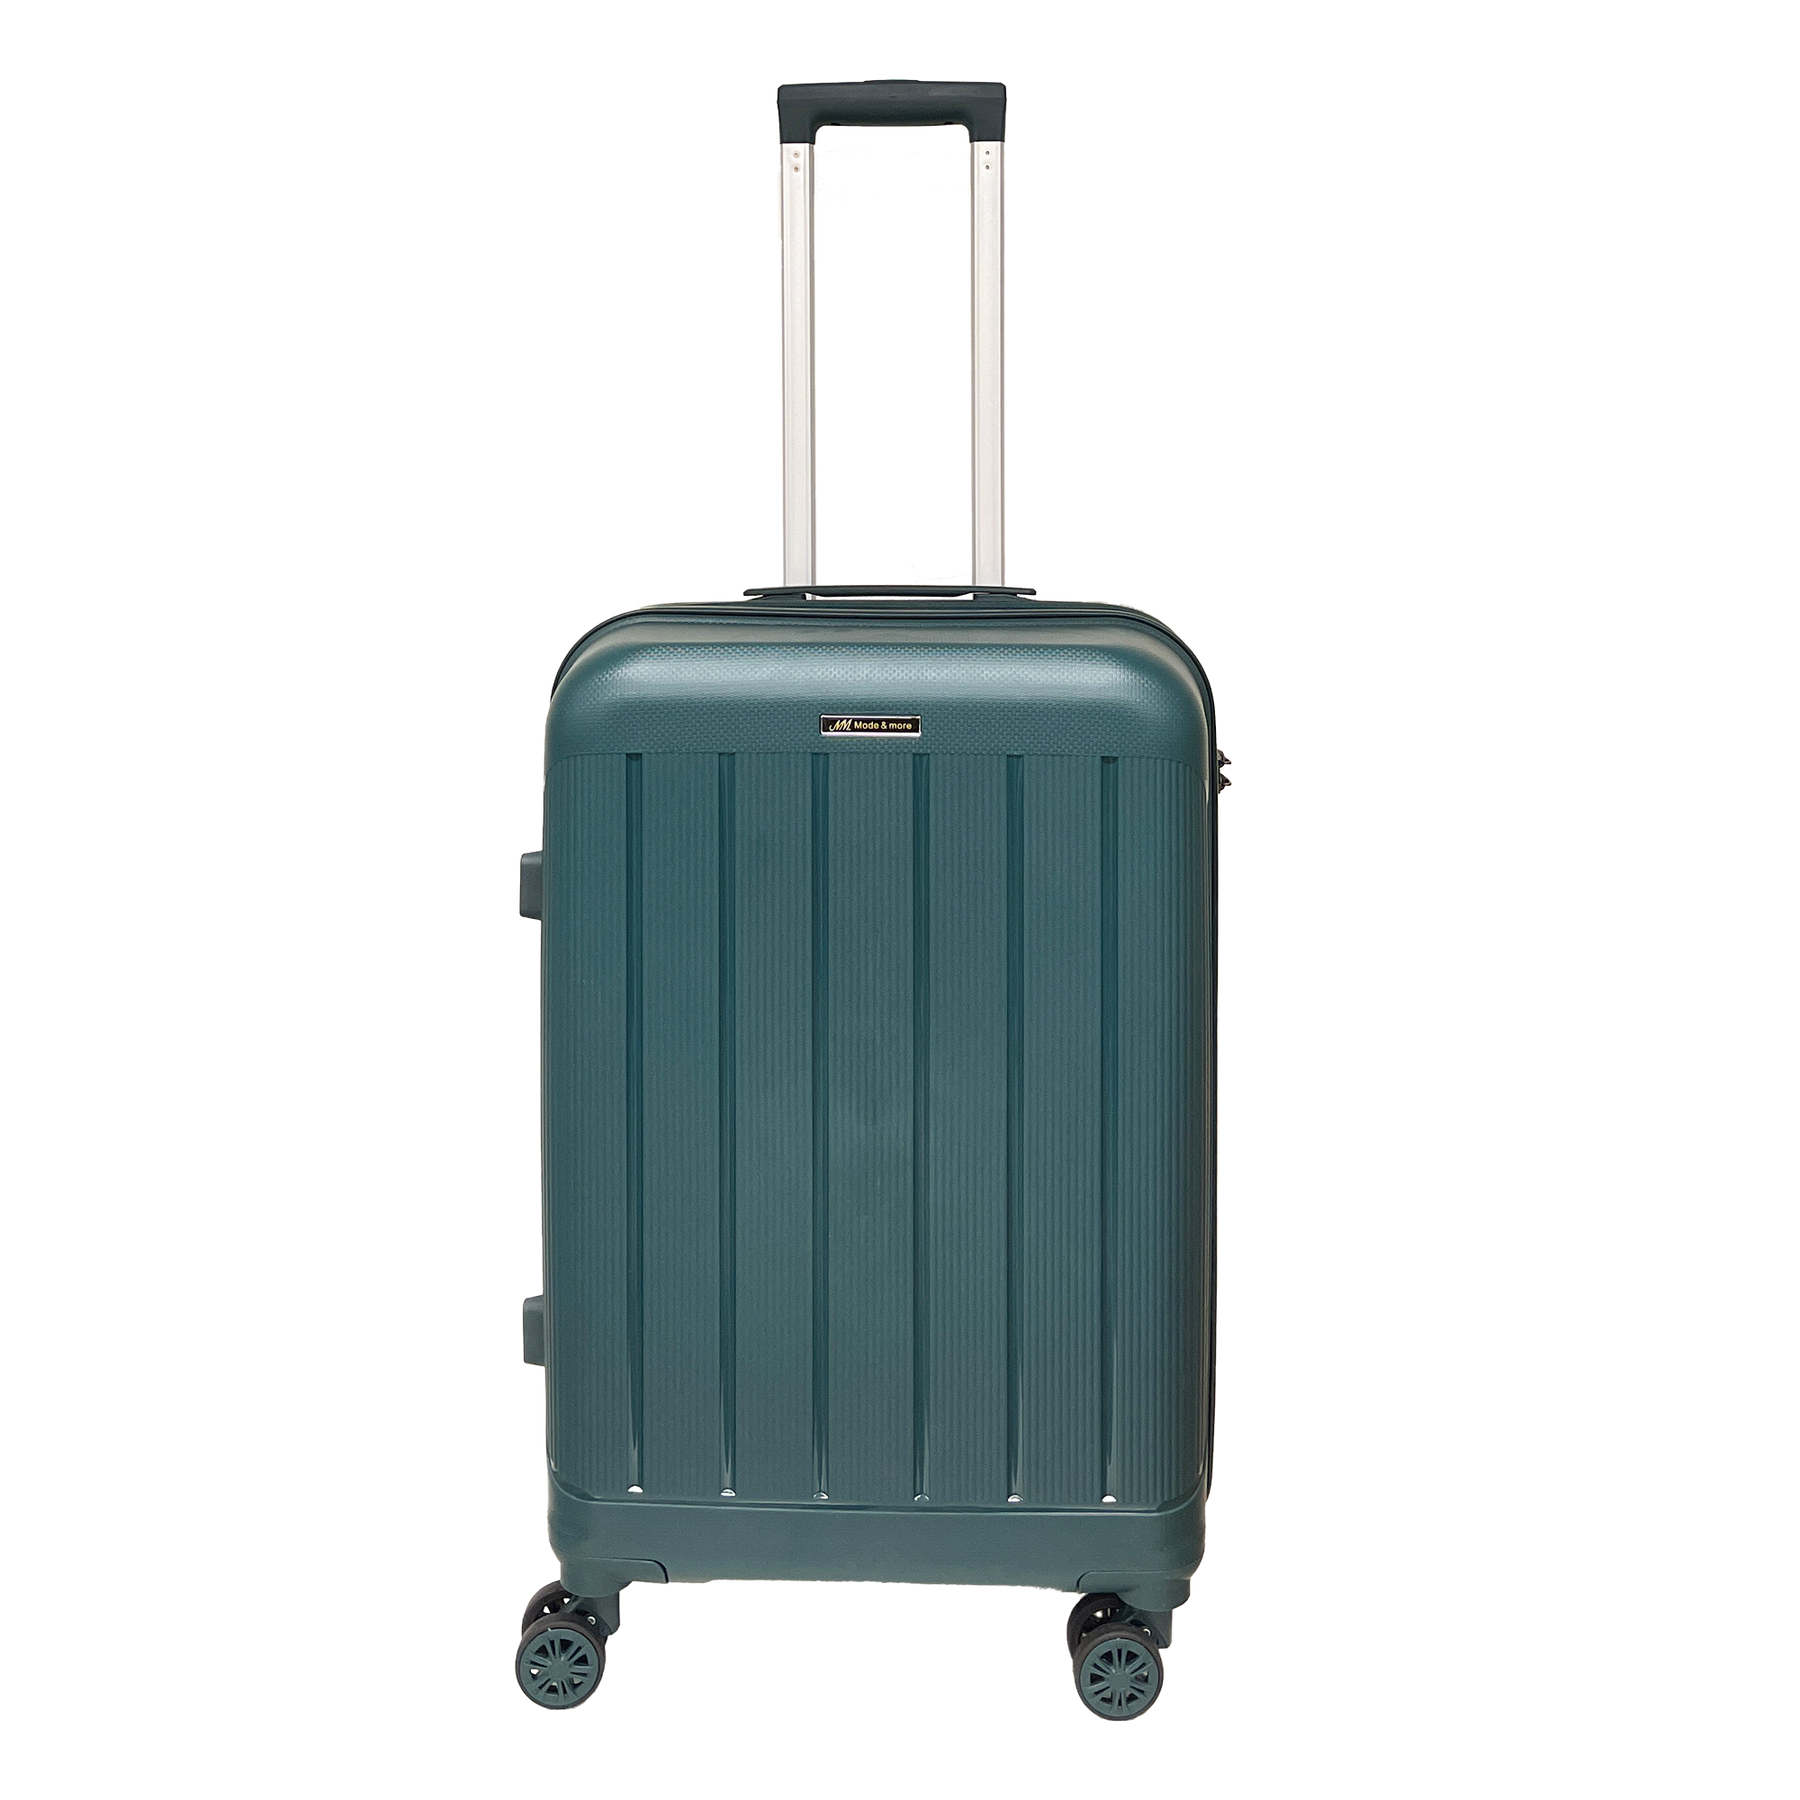 Μέση βαλίτσα μαλακού πολυπροπυλενίου 65x43x27cm με λουκέτο TSA